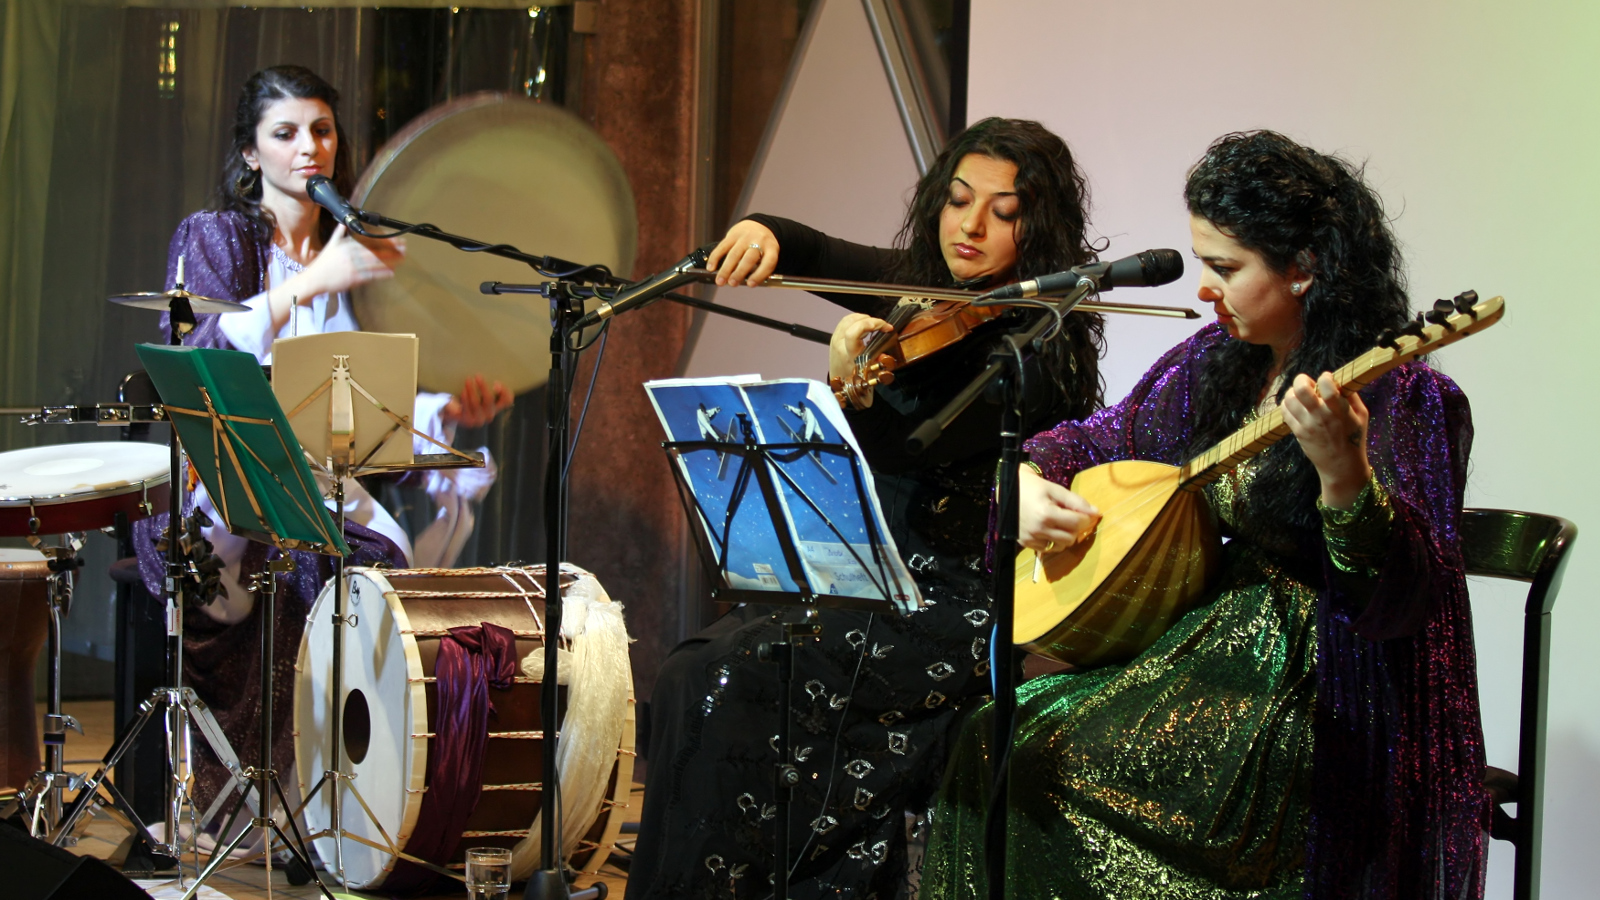 Kuvassa ovat Gûlistan Ensemblen kolme soittajaa esiintymässä ja esiintymisasut ovat tumman kiiltäviä.  Soittimina ovat rummut, viulu ja kastanja.